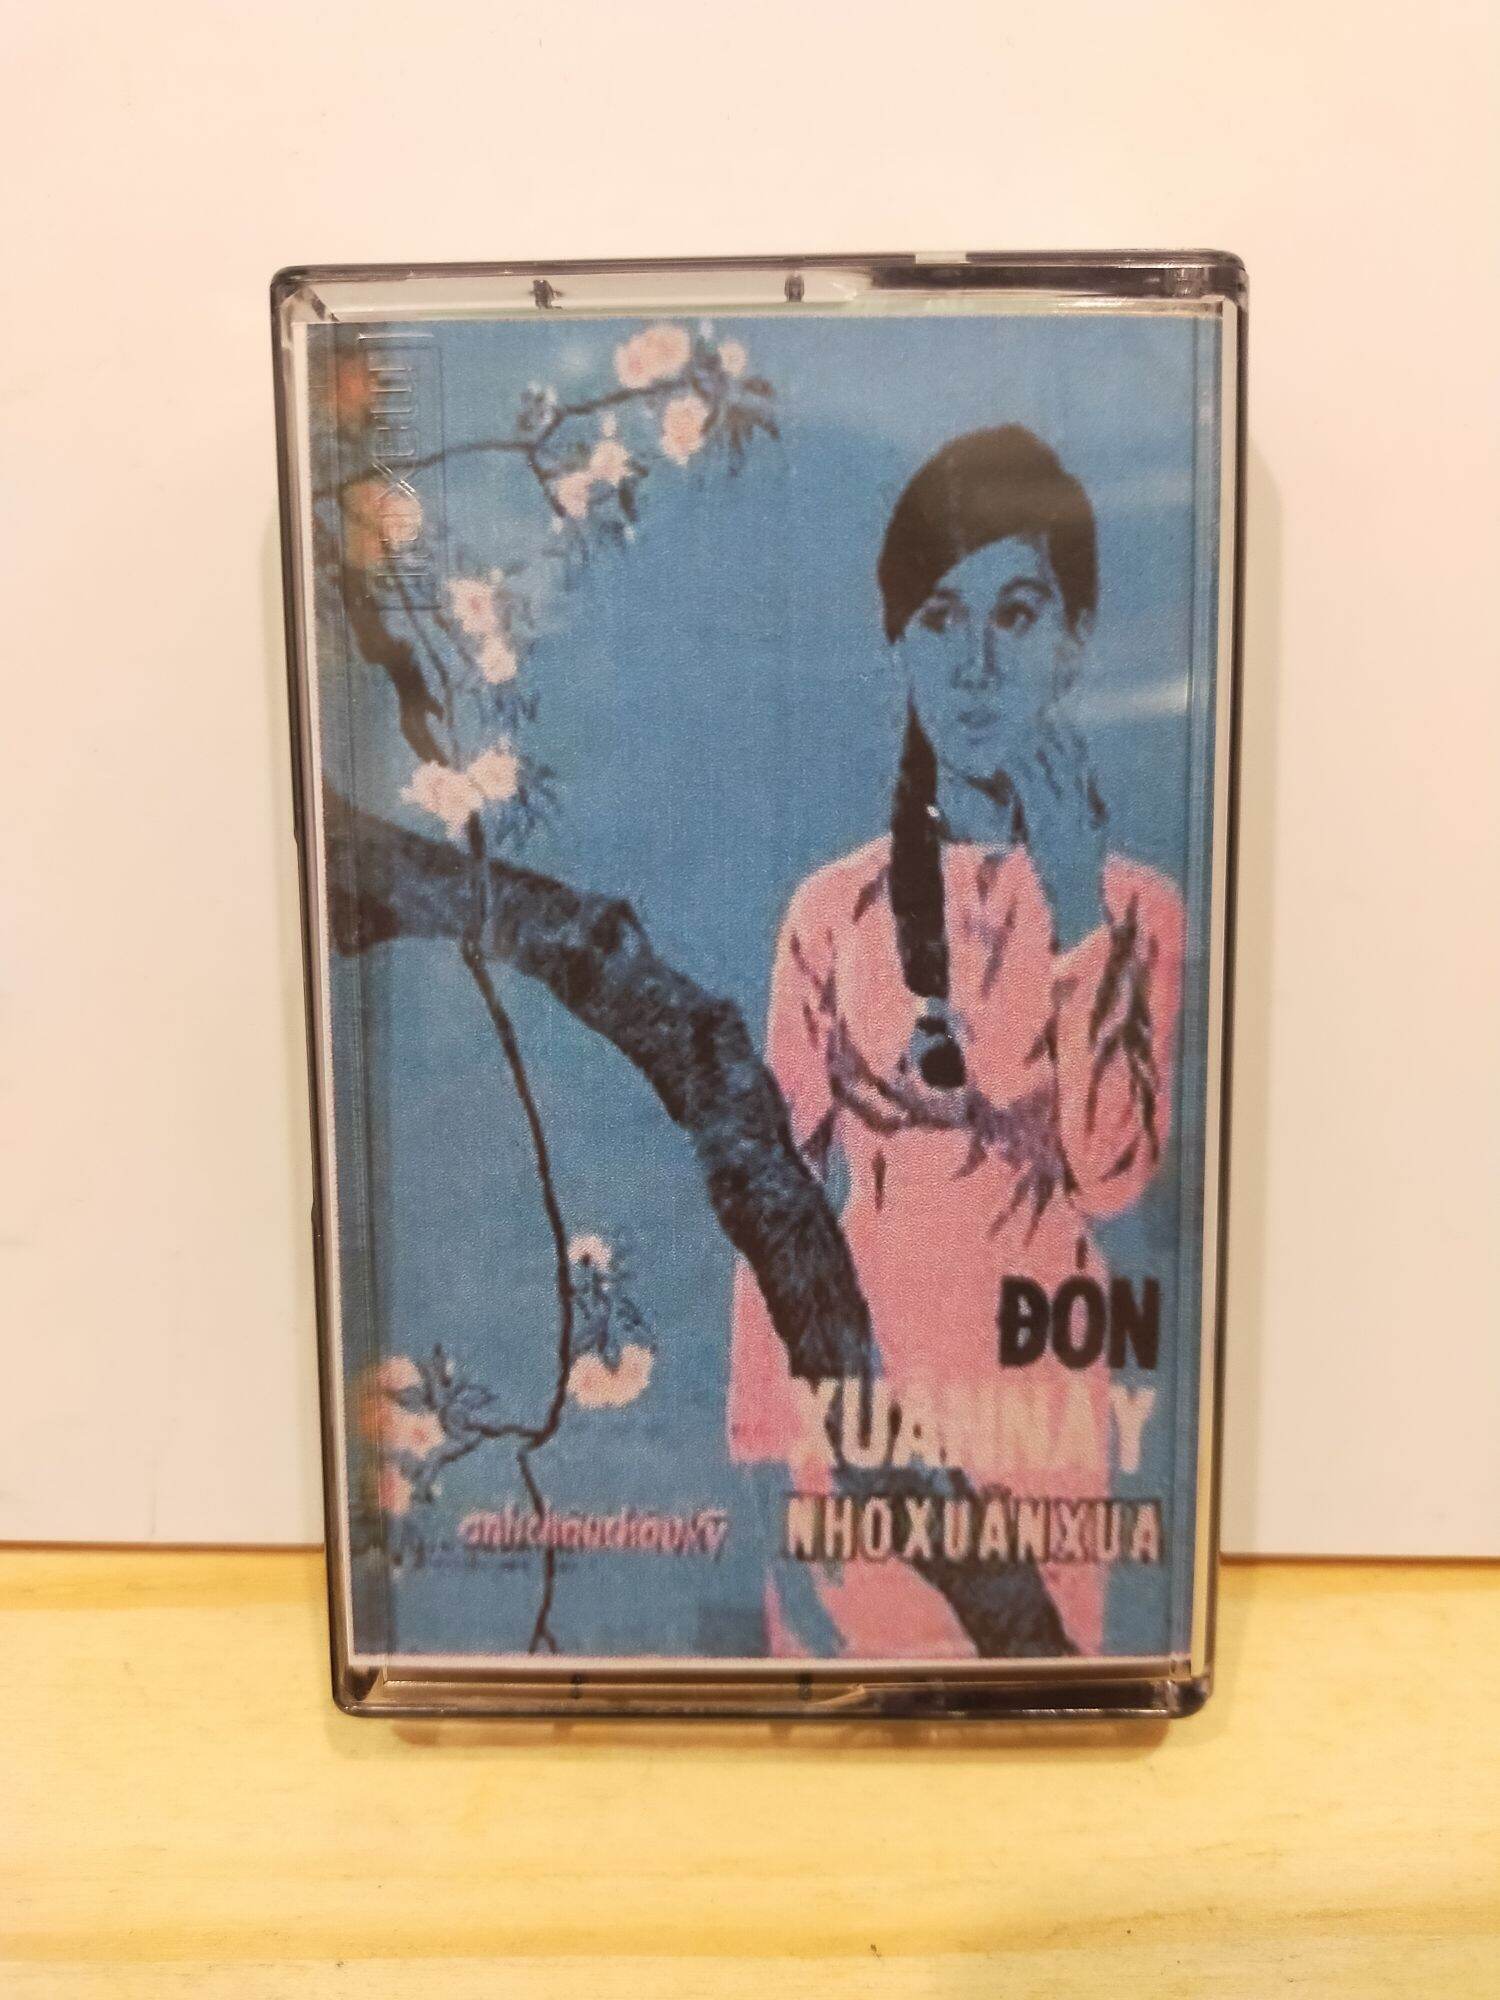 1 băng cassette maxell xl2 siêu xịn nhạc Xuân xưa tuyển chọn có tựa đề và tên ca sĩ ( lưu ý: đây là băng cũ